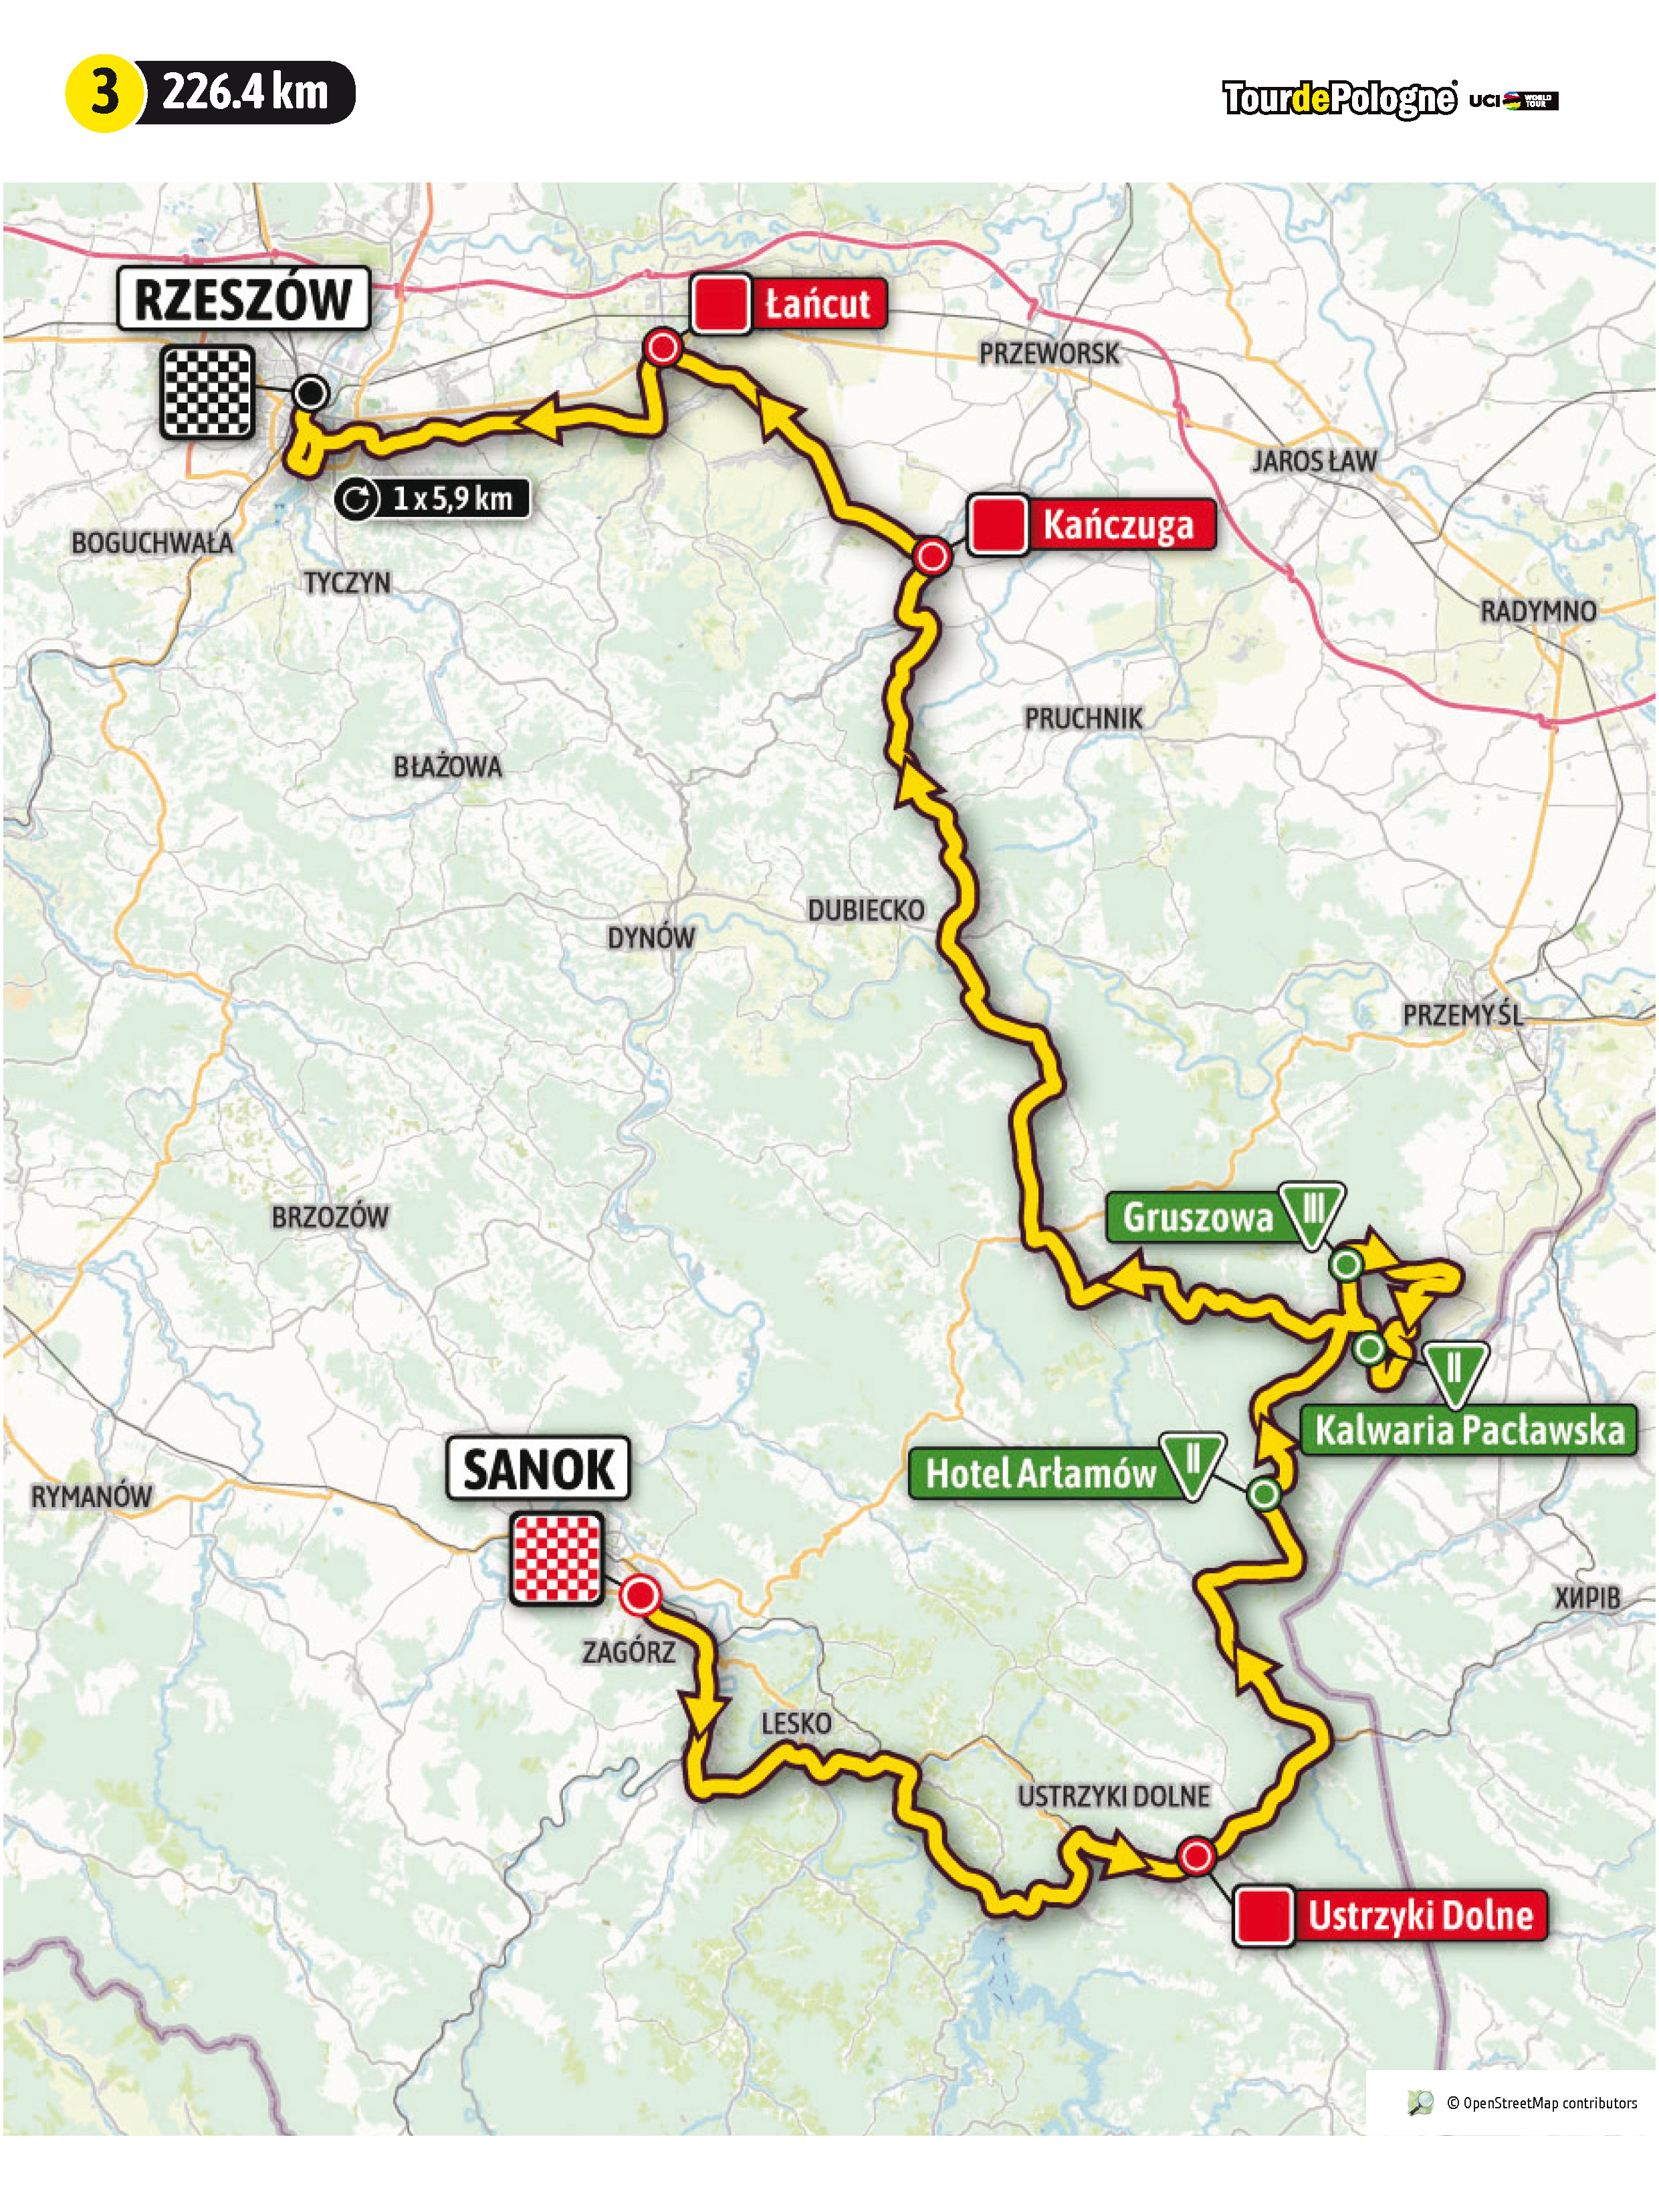 Szczegóły trasy 78. Tour de Pologne